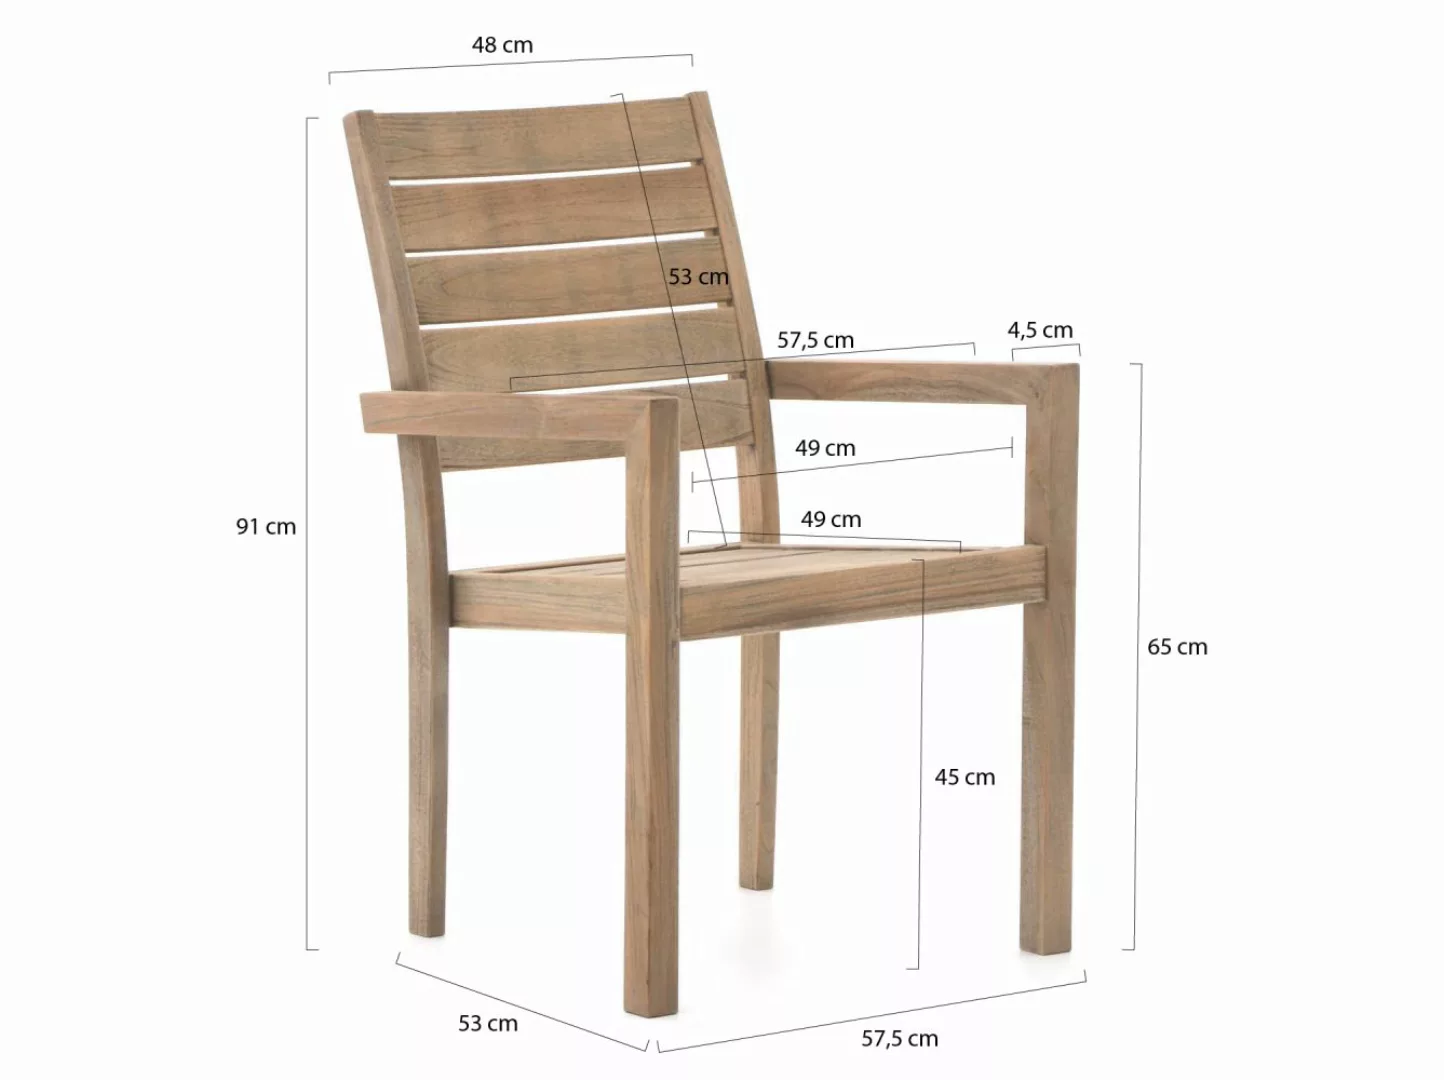 ROUGH-S/ROUGH-X 180 cm Gartenmöbel-Set mit Bank 4-teilig stapelbar günstig online kaufen